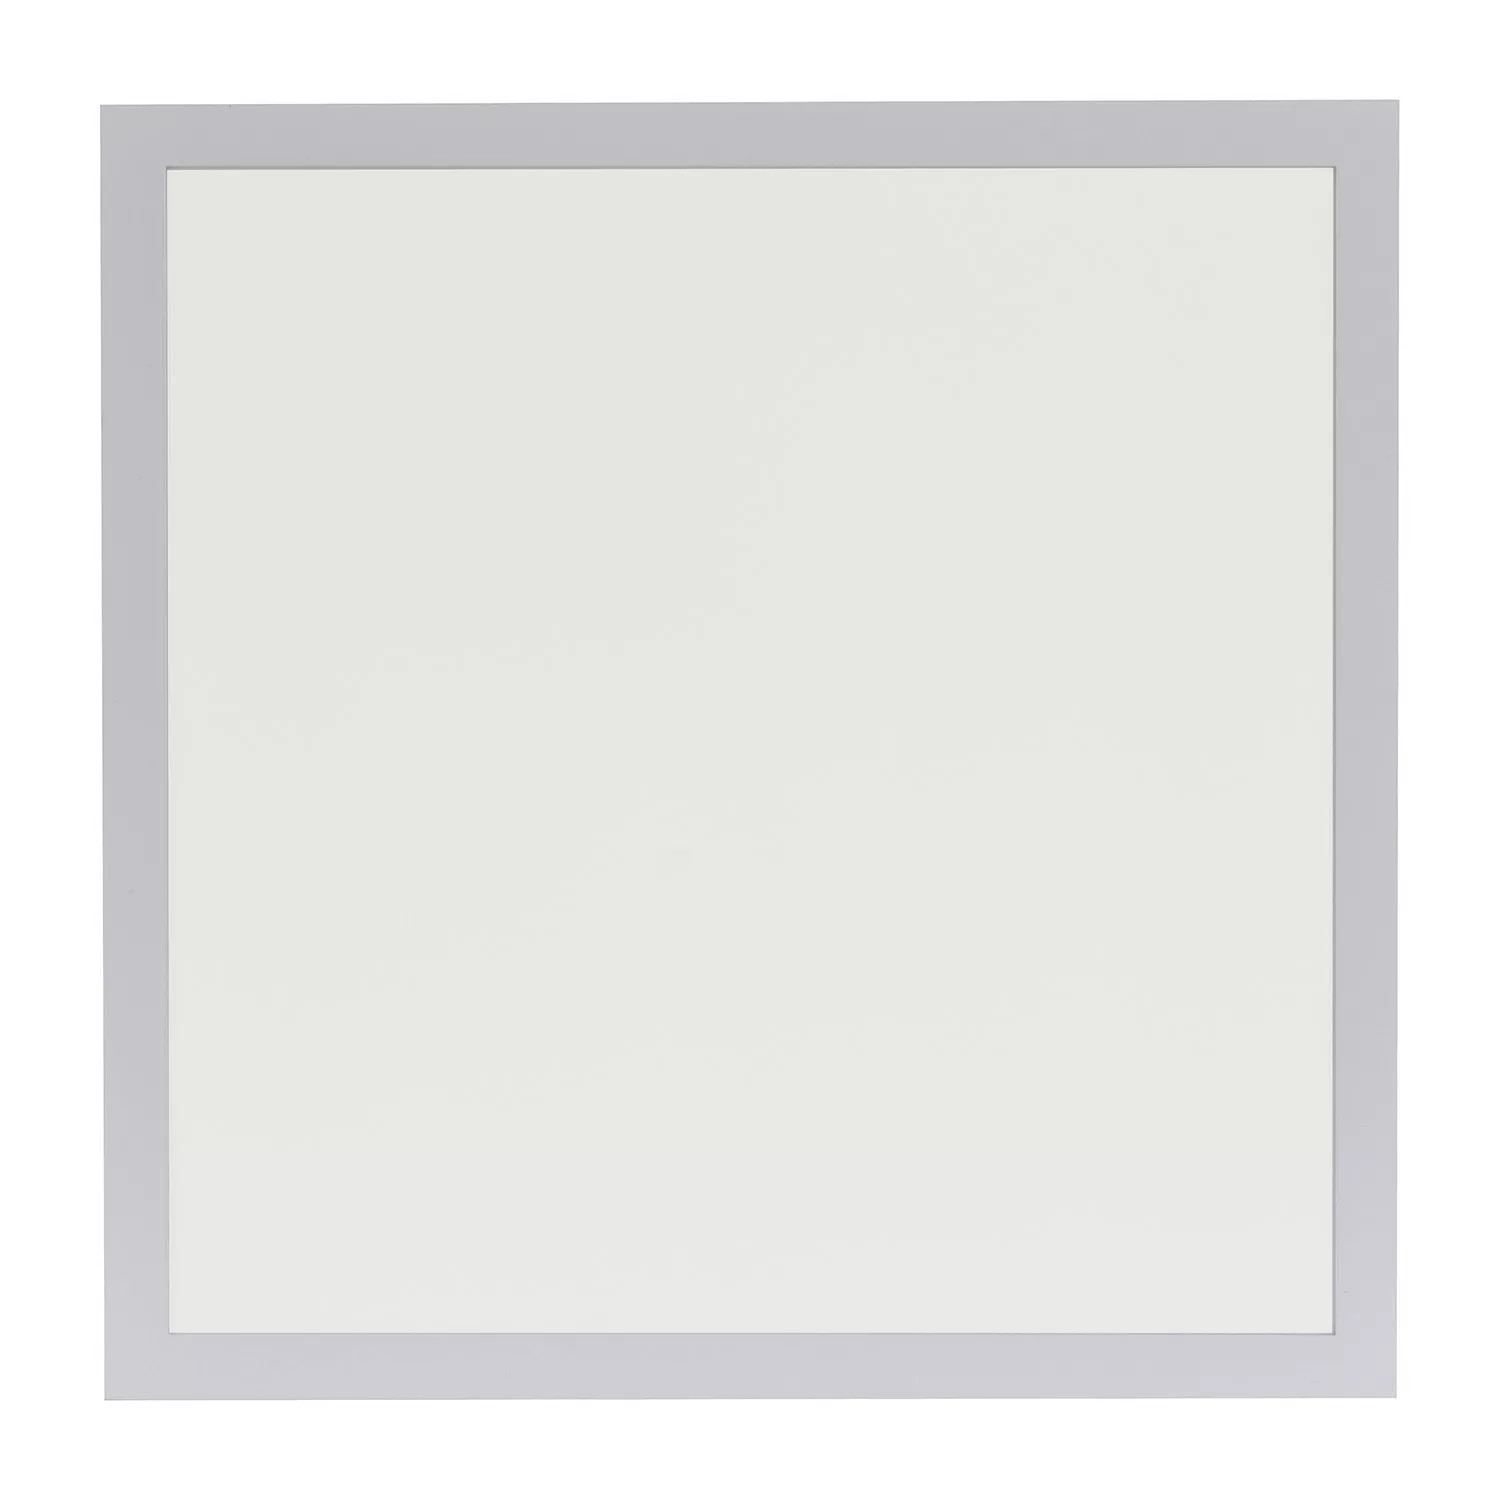 LED Deckenleuchte Flat in Weiß 2x 17W 4300lm 450x450mm günstig online kaufen